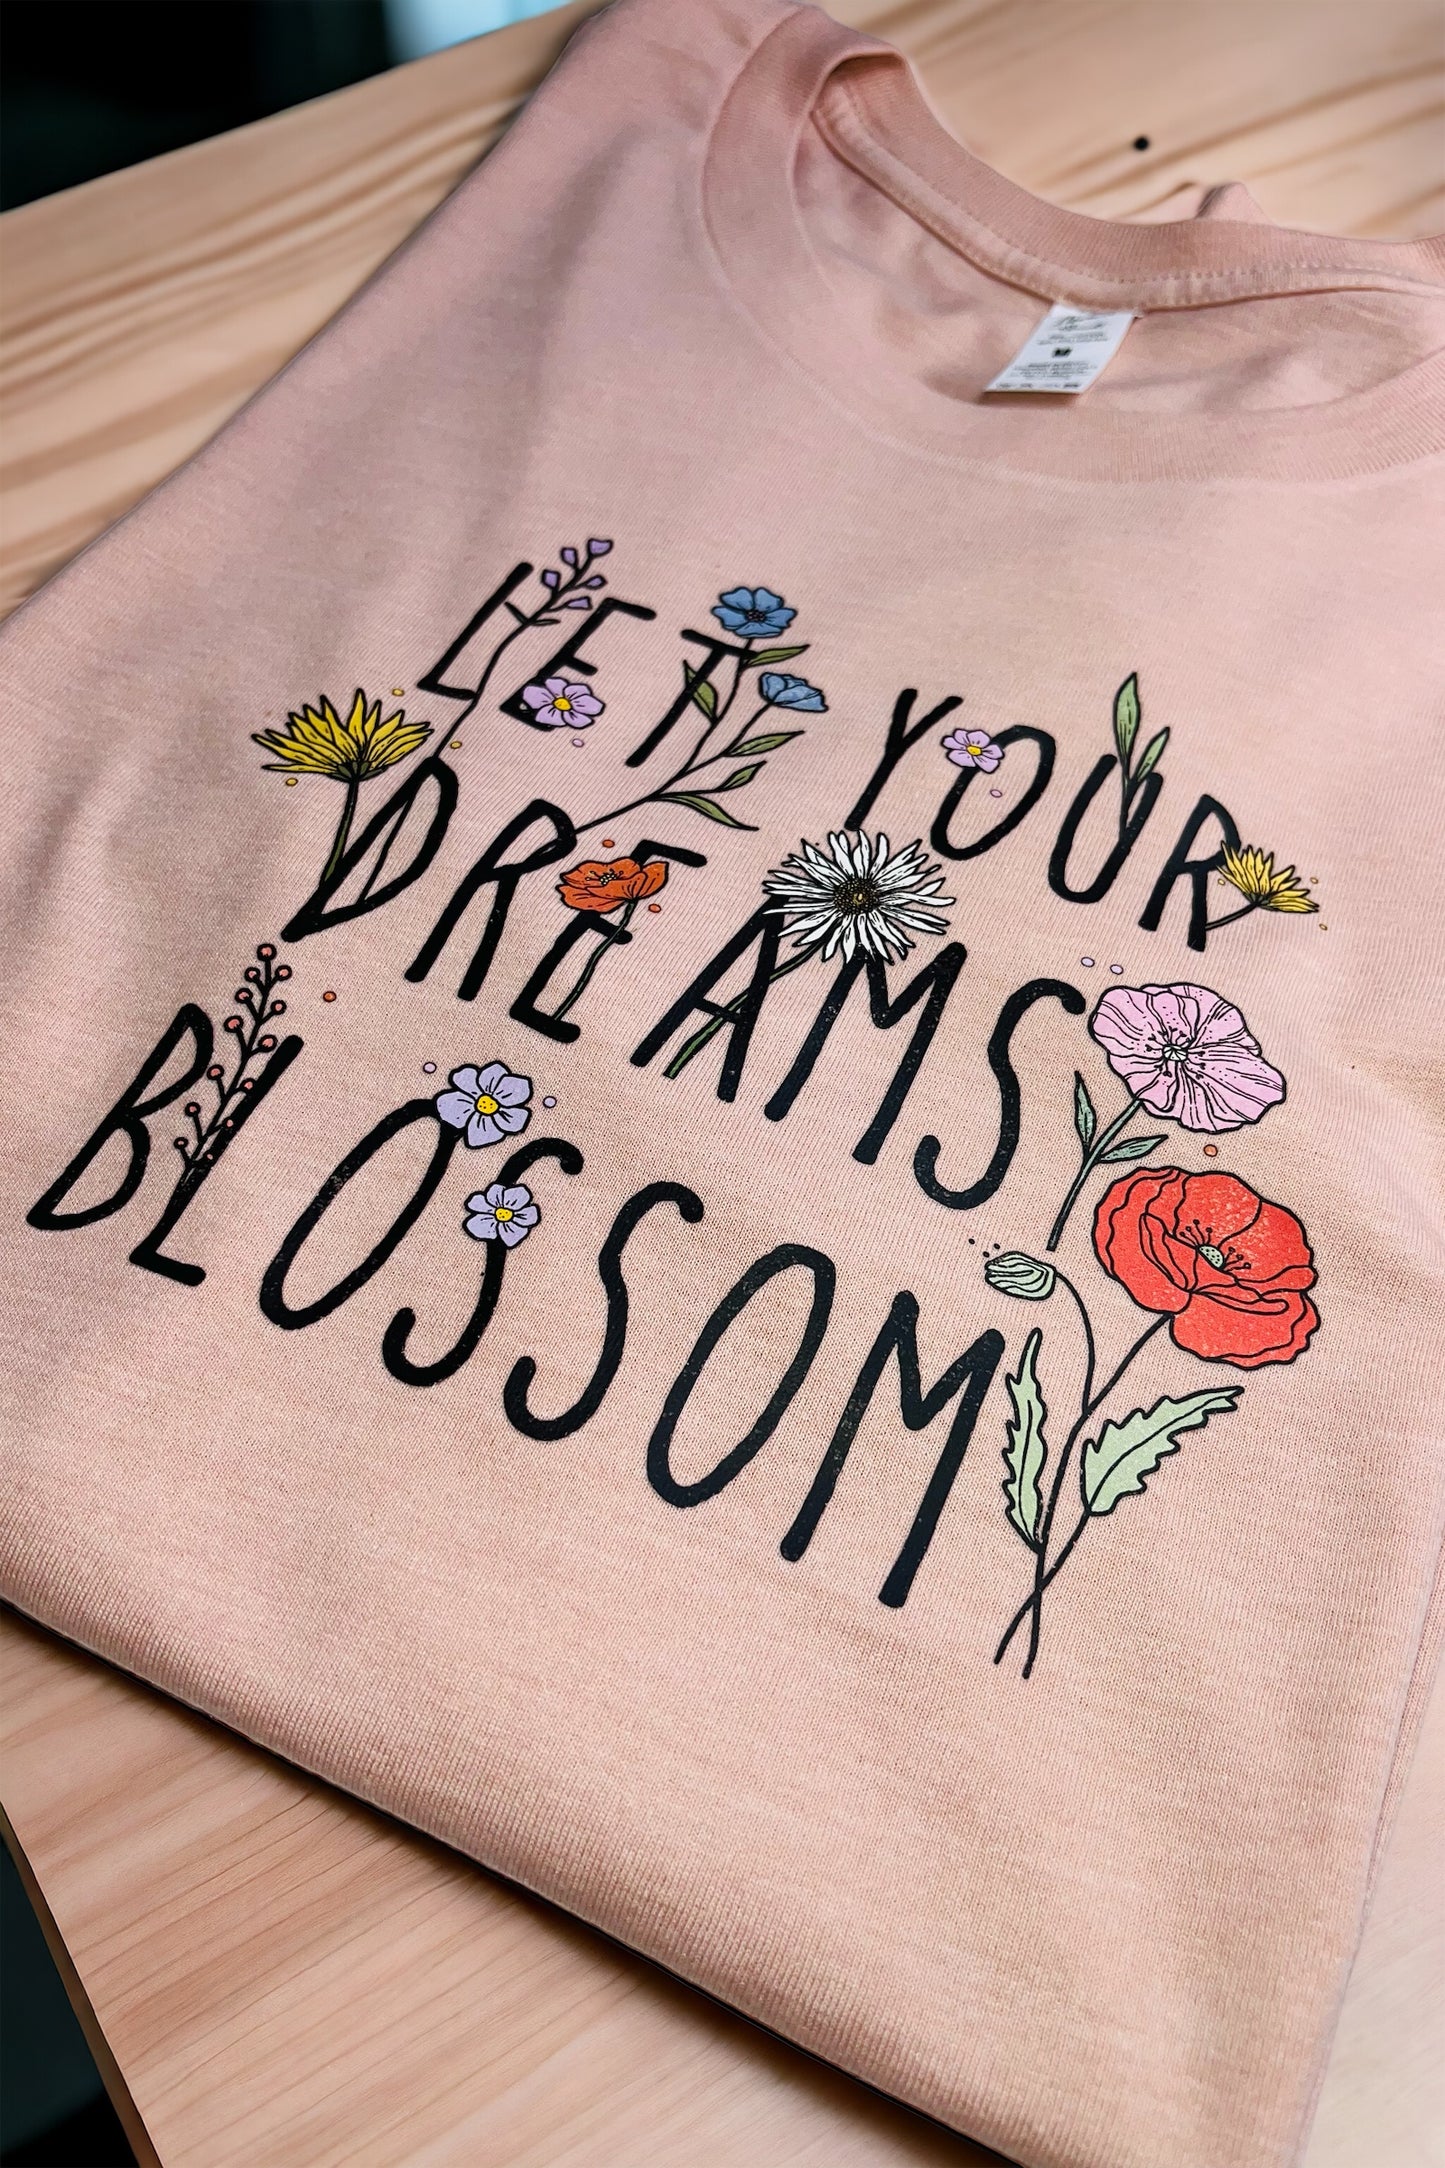 Let Your Dream Blossom Shirt